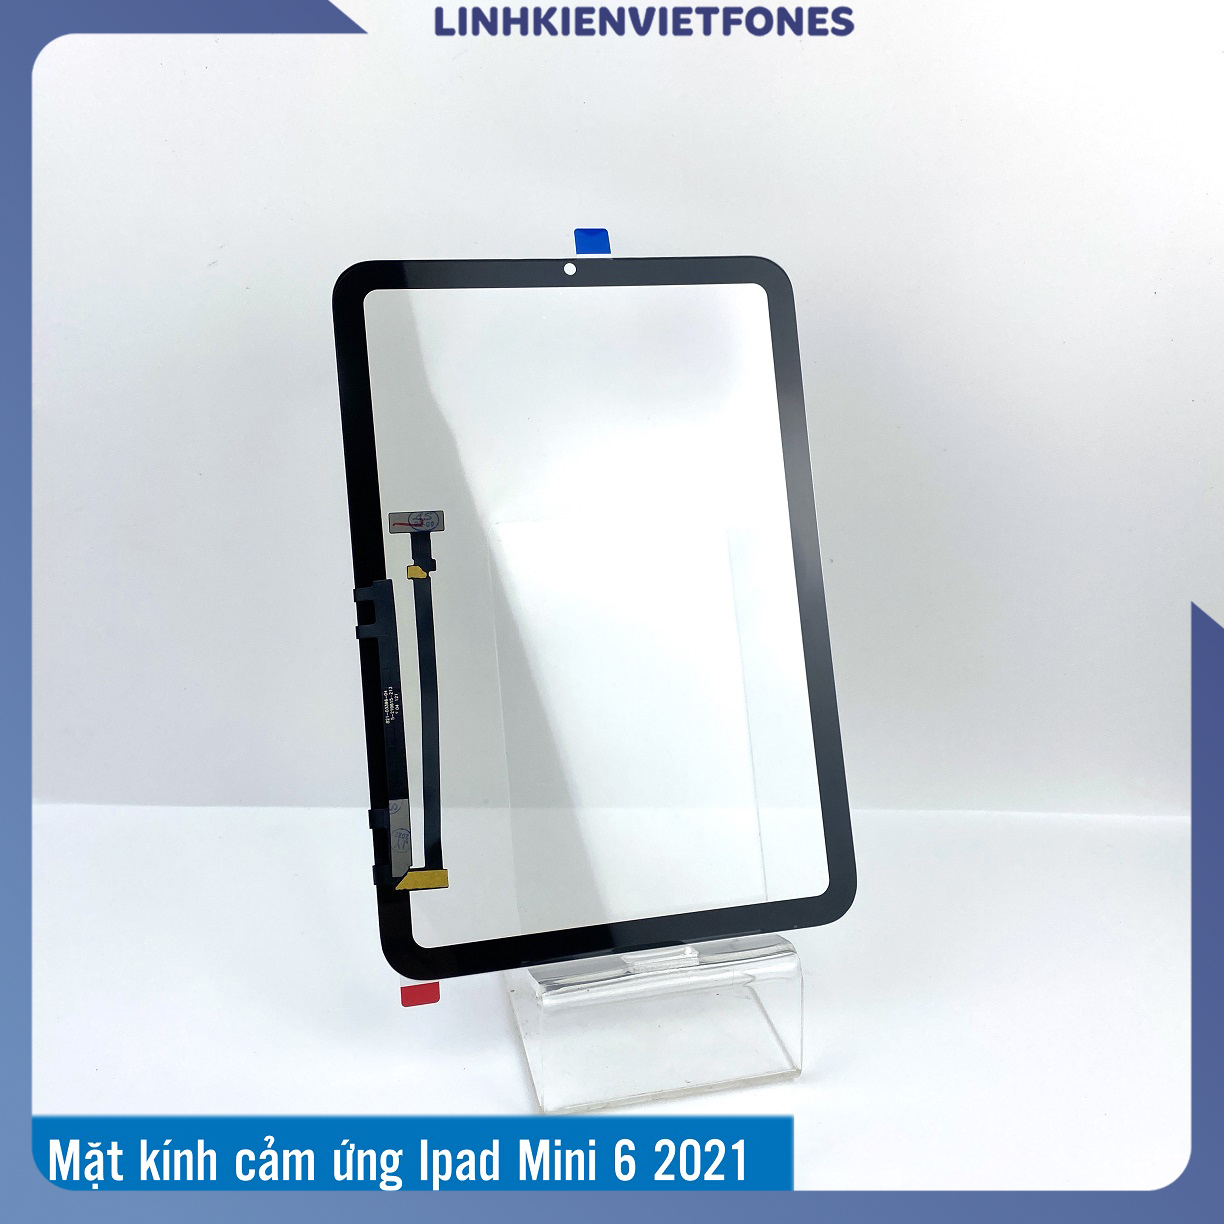 Mặt Kính Cảm Ứng iPad Mini 6 2021